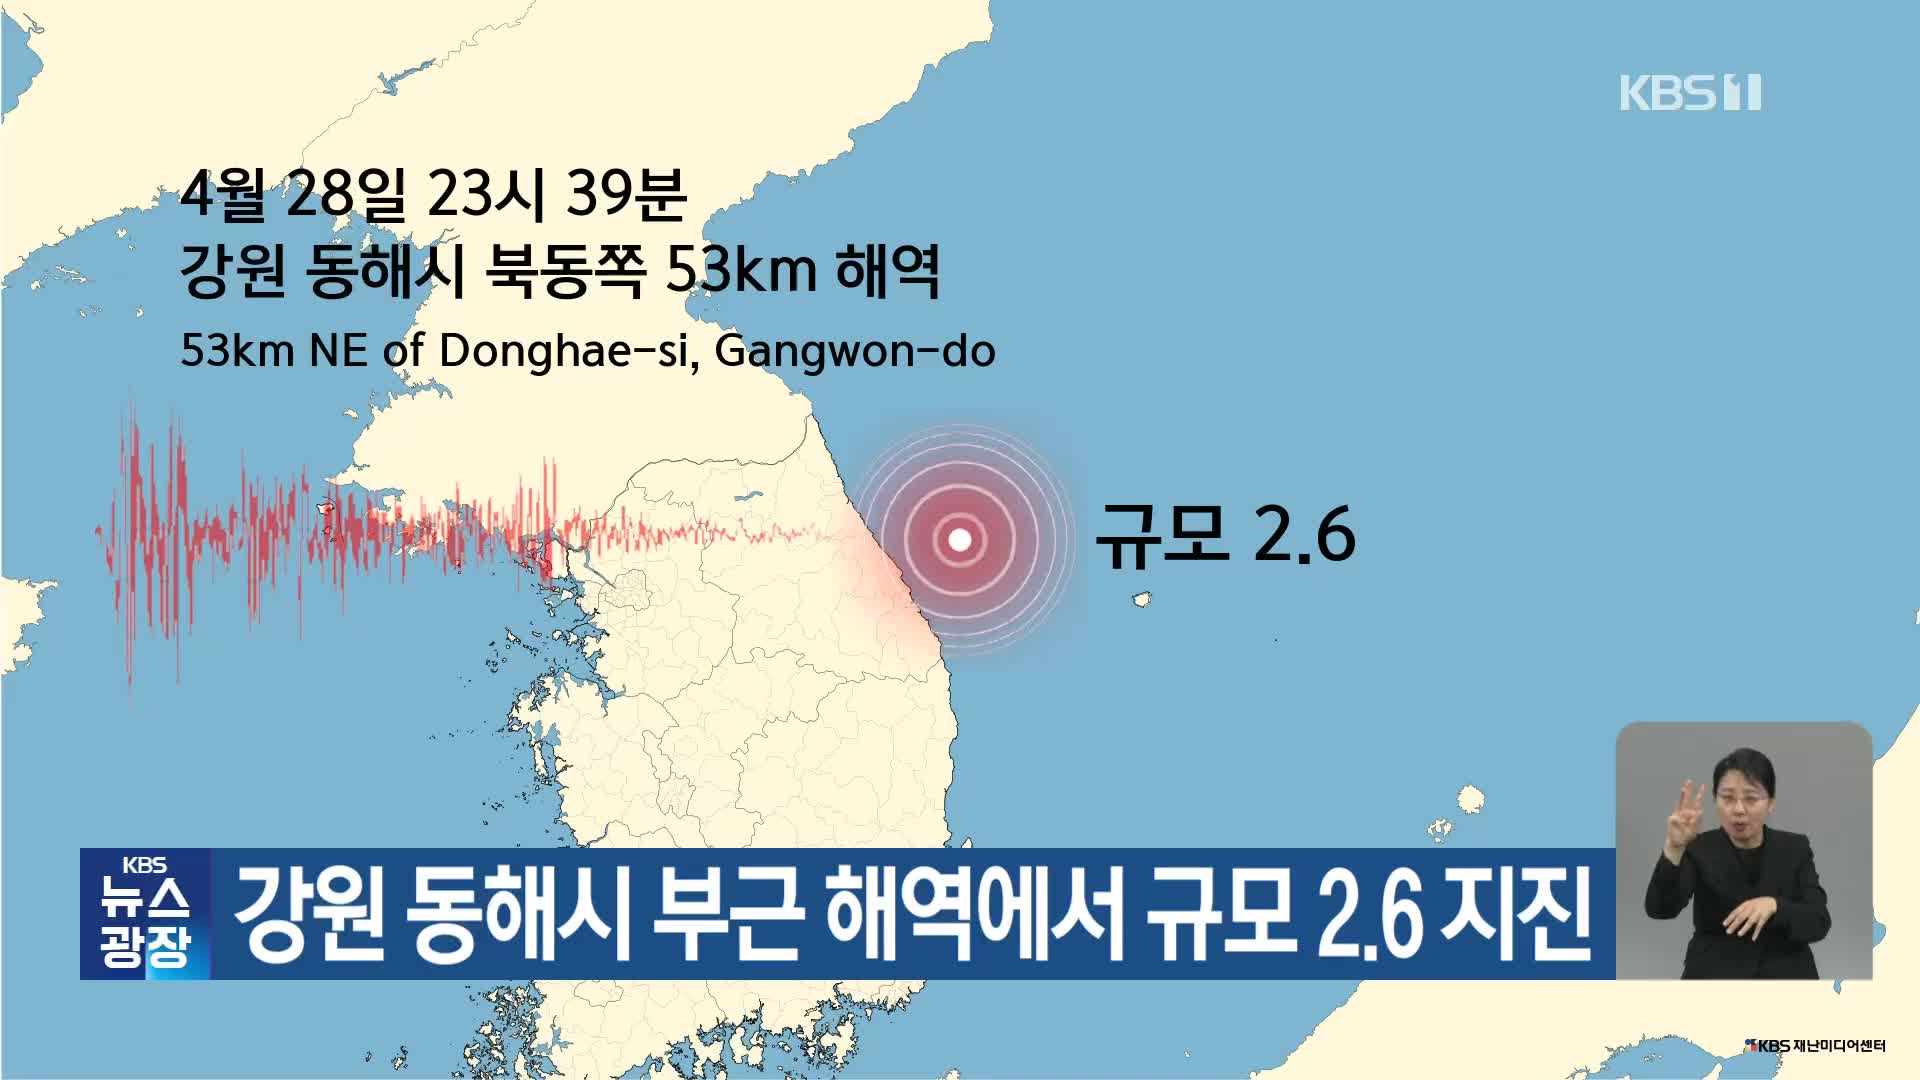 강원 동해시 부근 해역에서 규모 2.6 지진